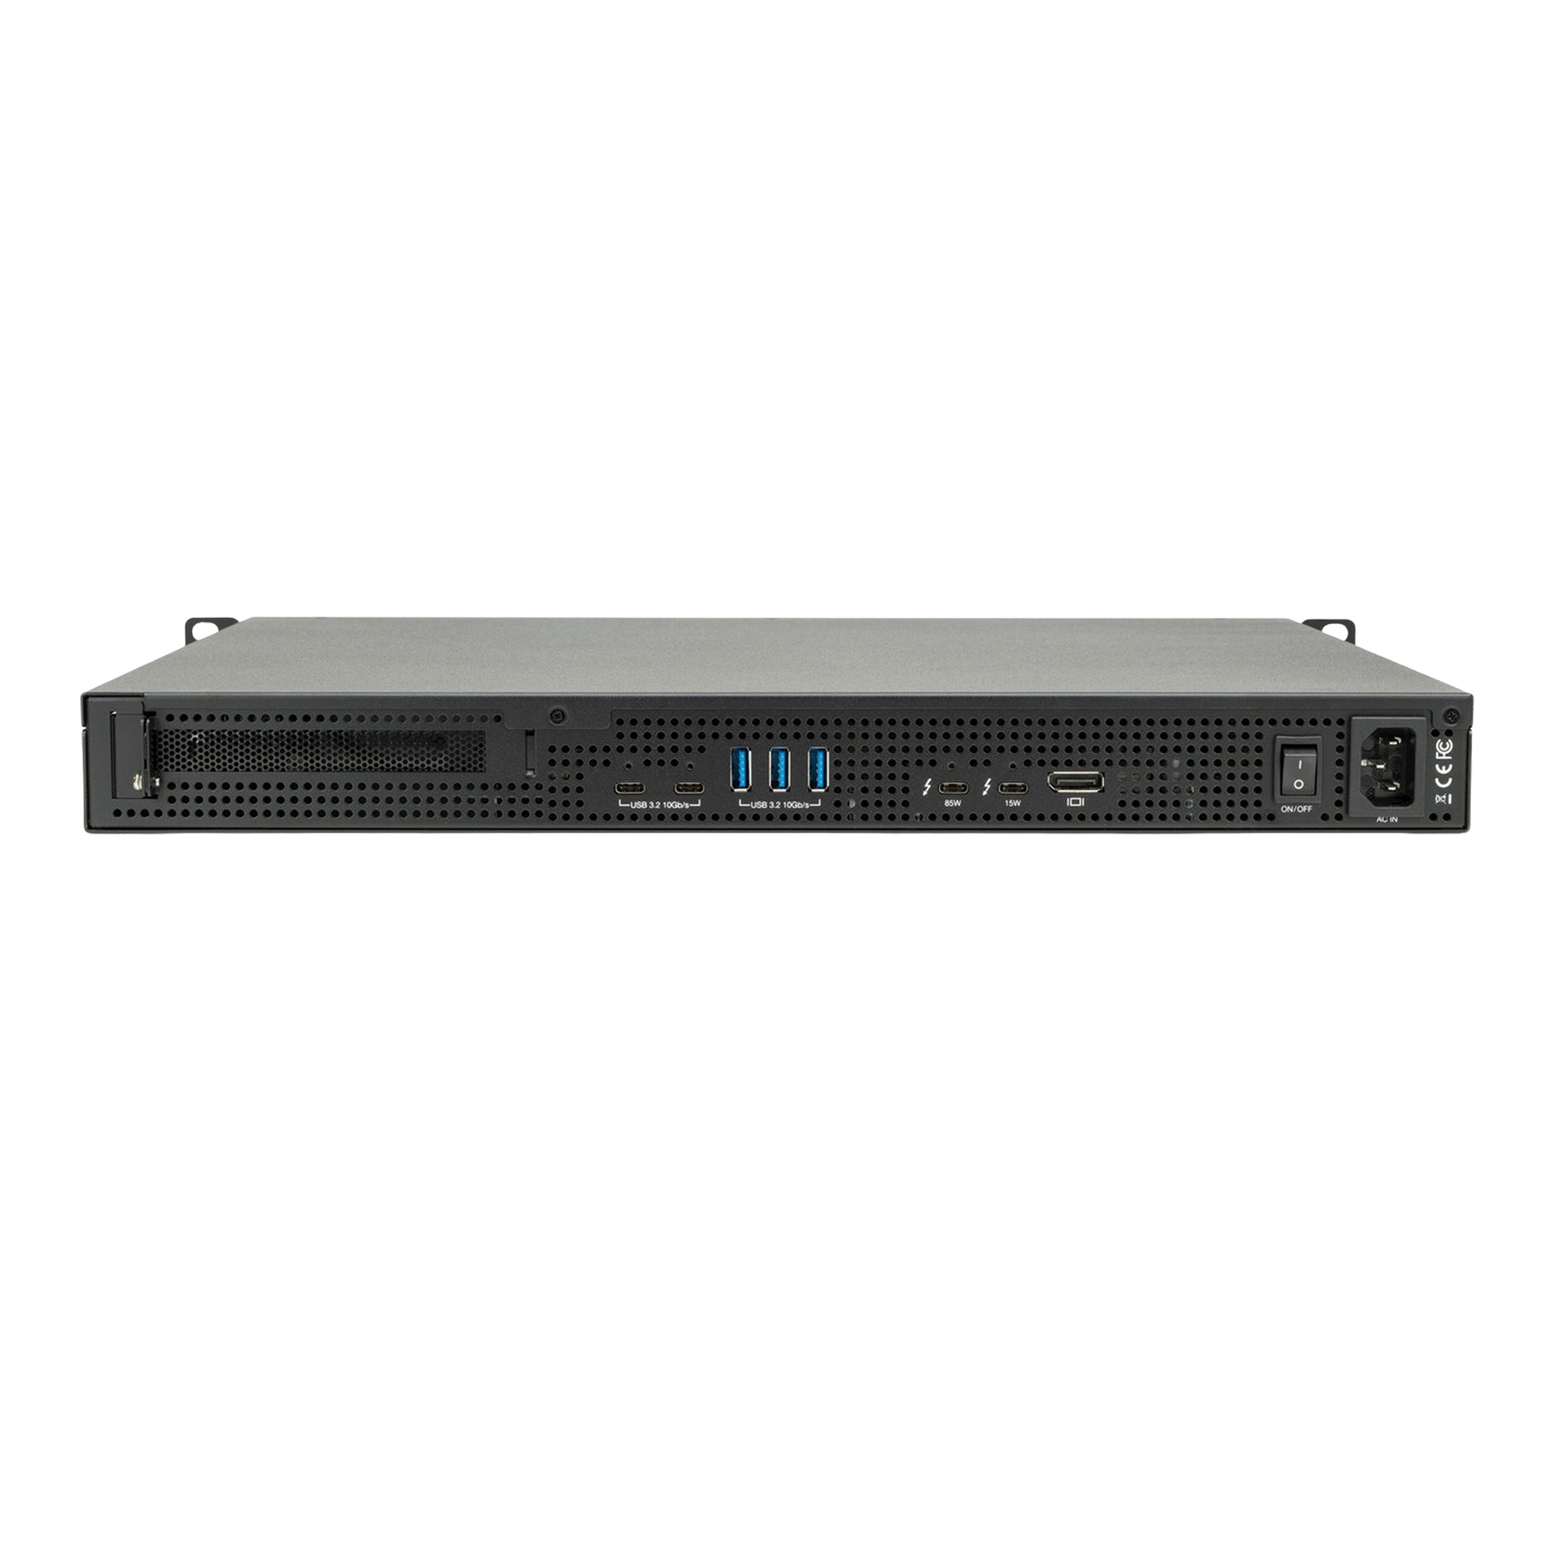 OWC 32TB (4 x 8TB HDD) Flex 1U4 4-Bay Rackmount Thunderbolt Storage, Docking & PCIe Expansion Solution